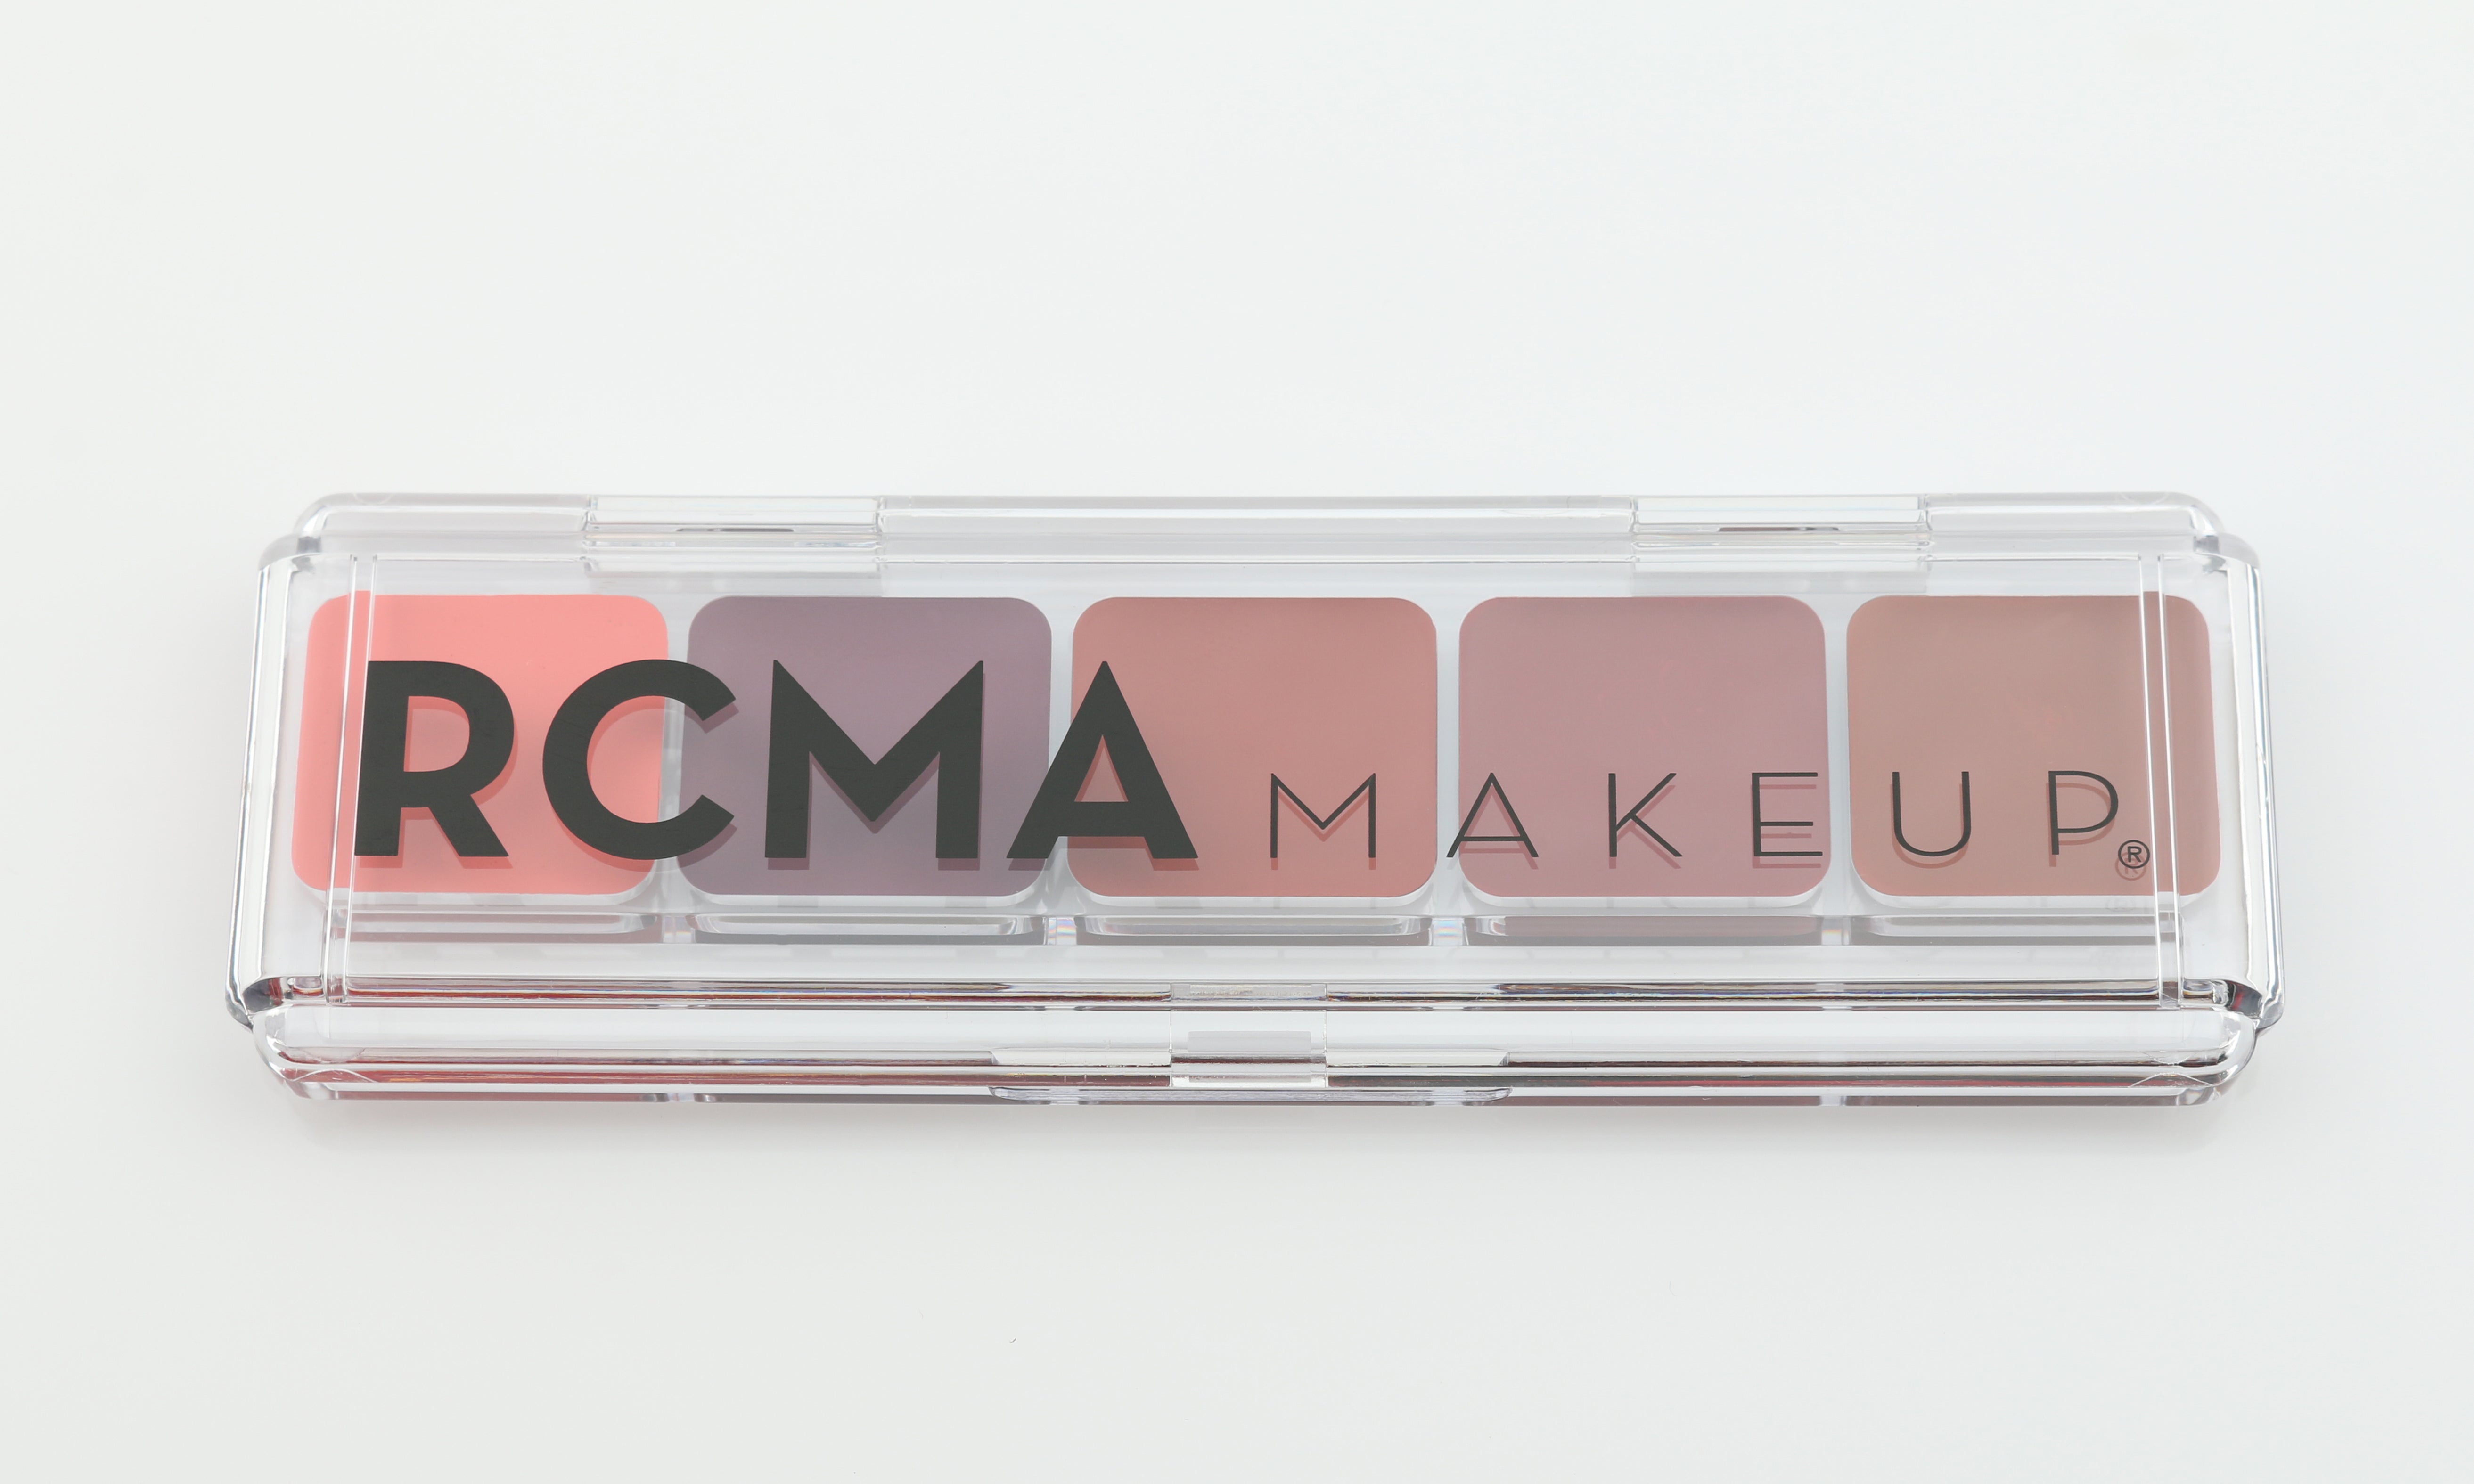 Rcma Makeup